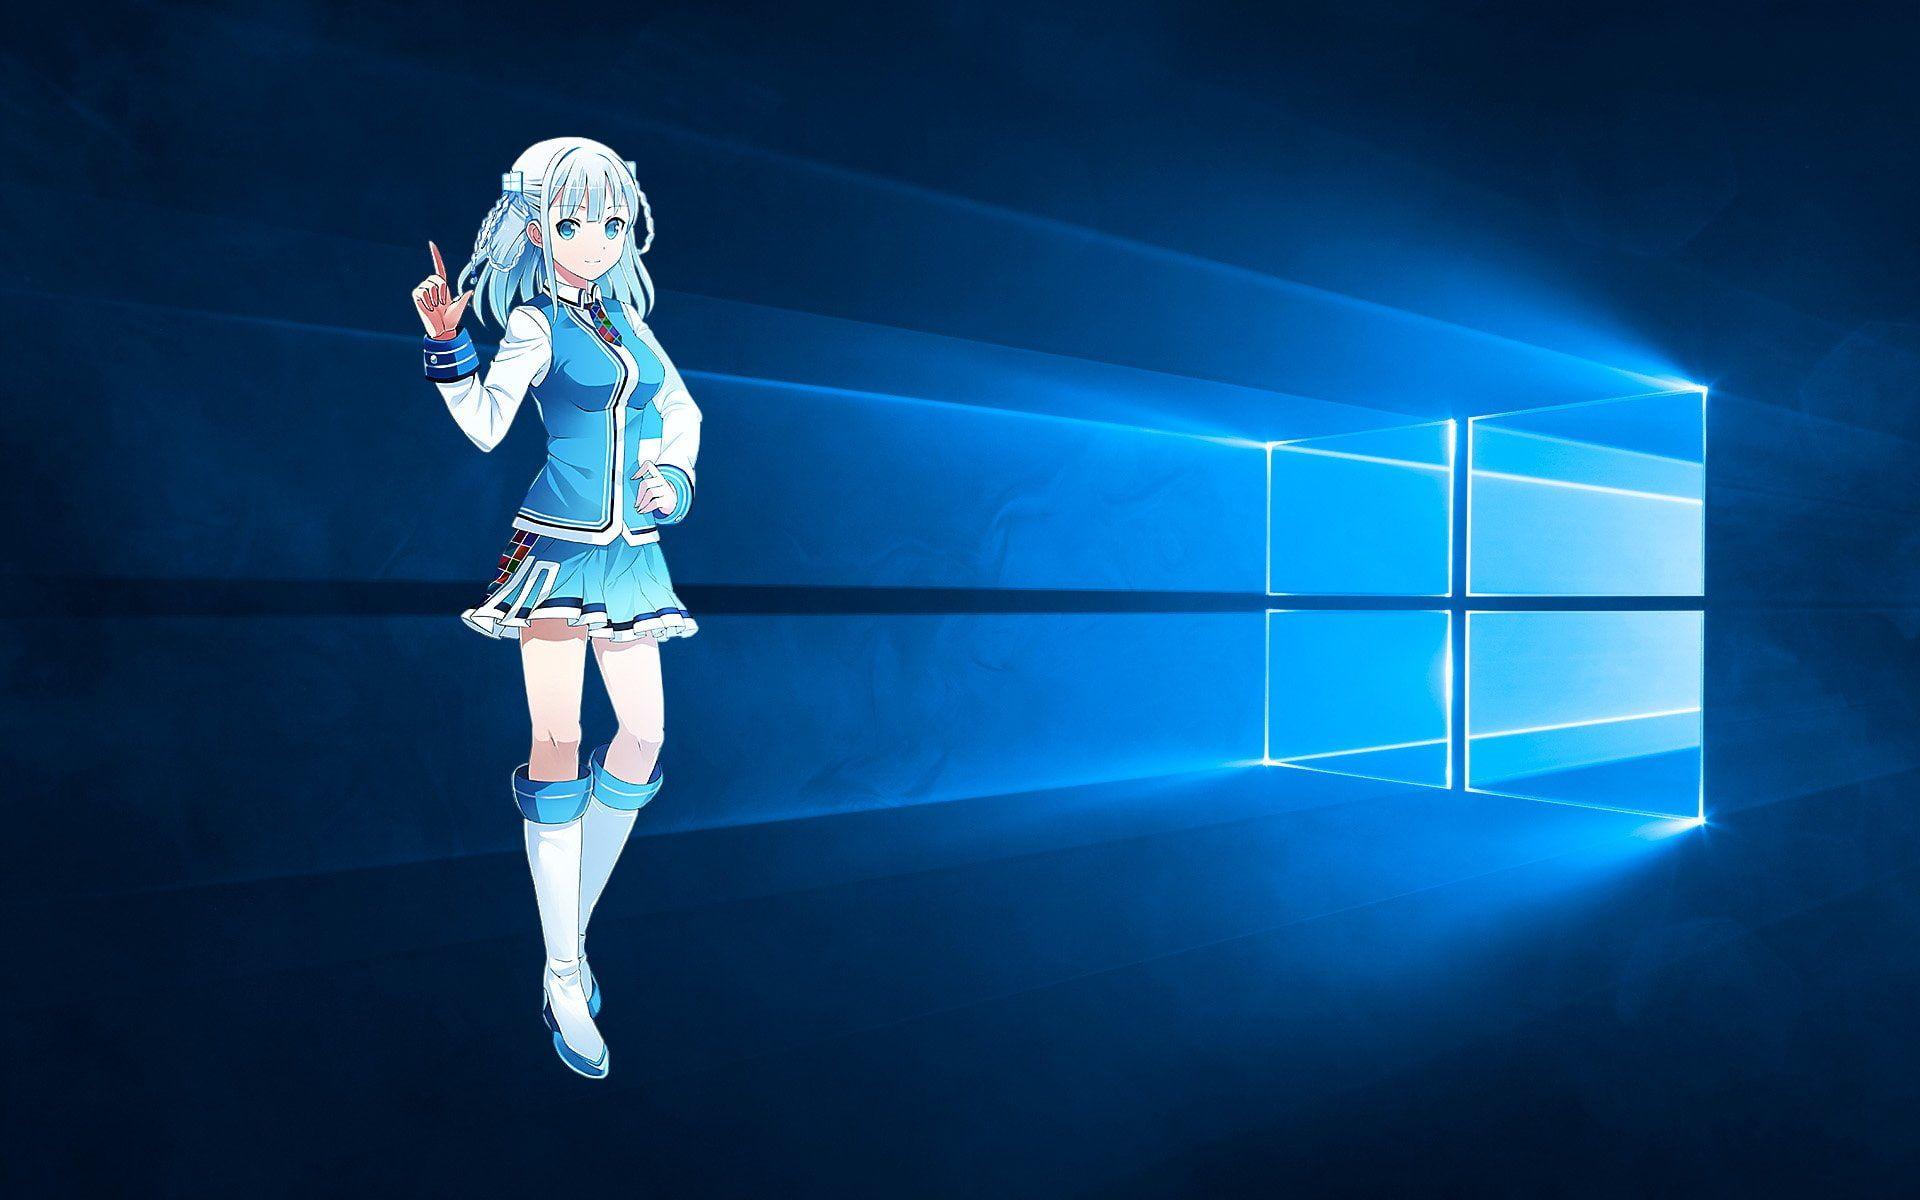 Bạn yêu thích Windows 10, cũng như Anime? Bạn nên thử ngay hình nền miễn phí độc đáo này! Tạo cảm giác mới lạ cho màn hình và trải nghiệm Windows 10 tuyệt vời hơn bao giờ hết.